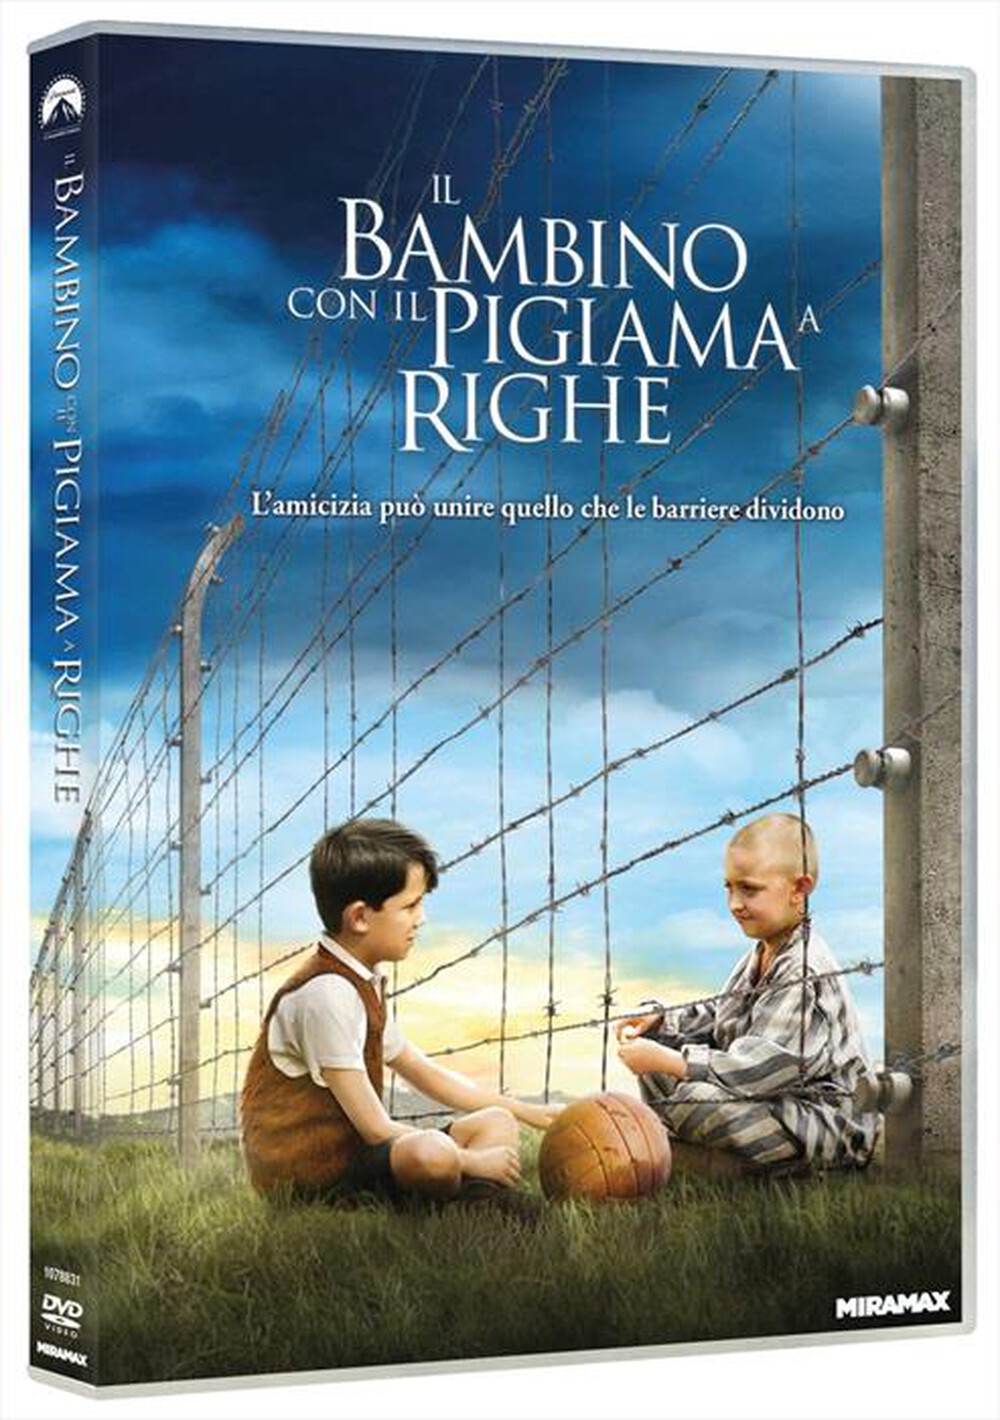 "Paramount Pictures - Bambino Con Il Pigiama A Righe (Il)"